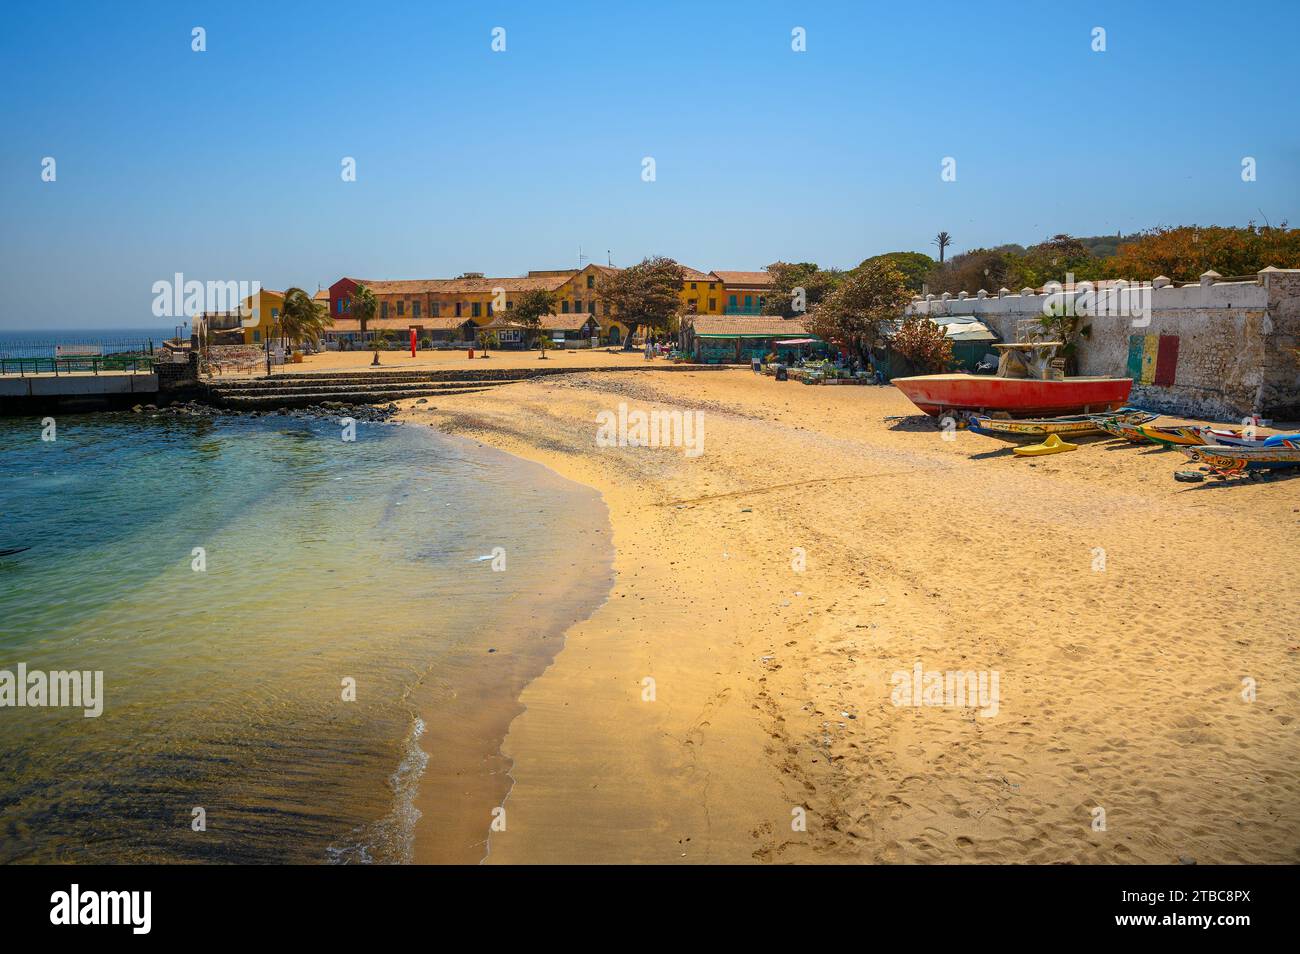 Plage de sable sur l'île de Gorée avec des bâtiments colorés et des bateaux Banque D'Images